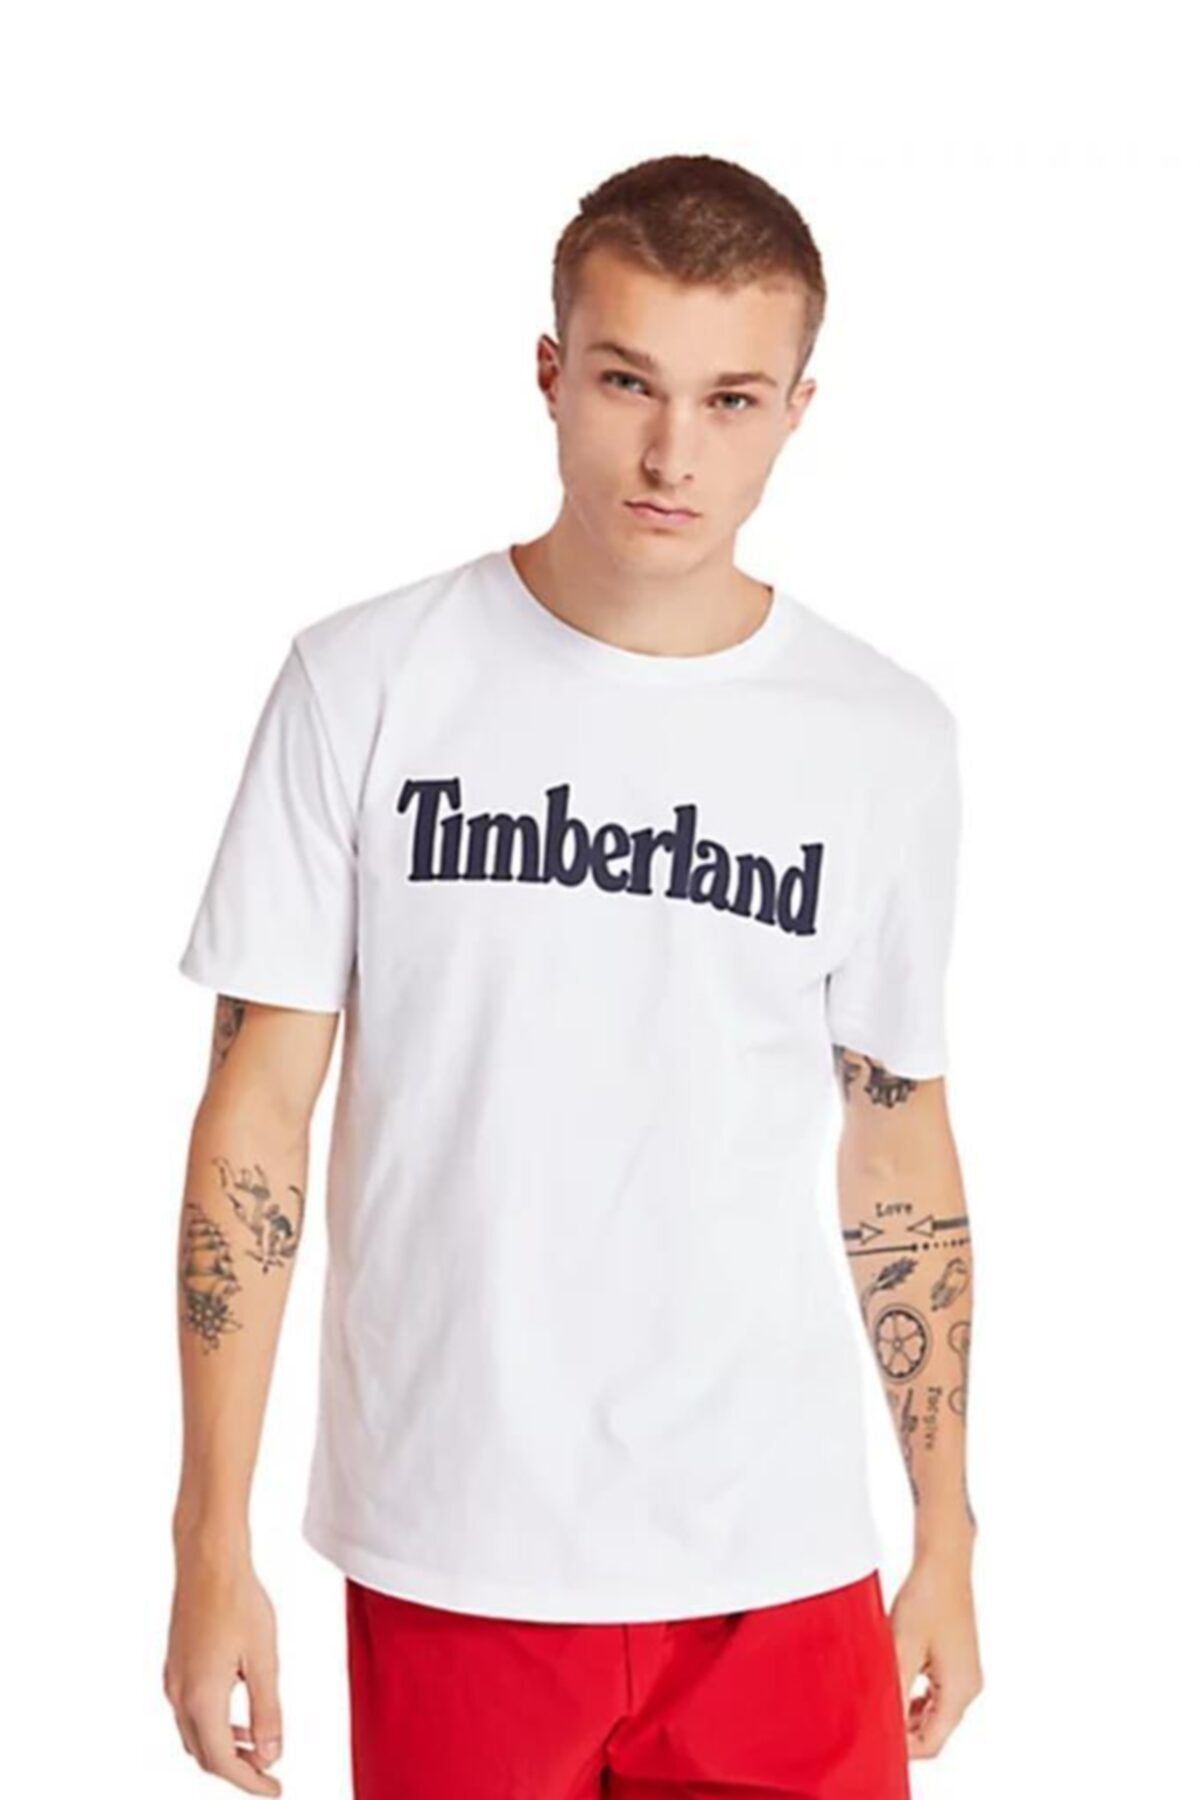 Timberland Ss Kennebec River Brand Linear Erkek T-shirt Beyaz